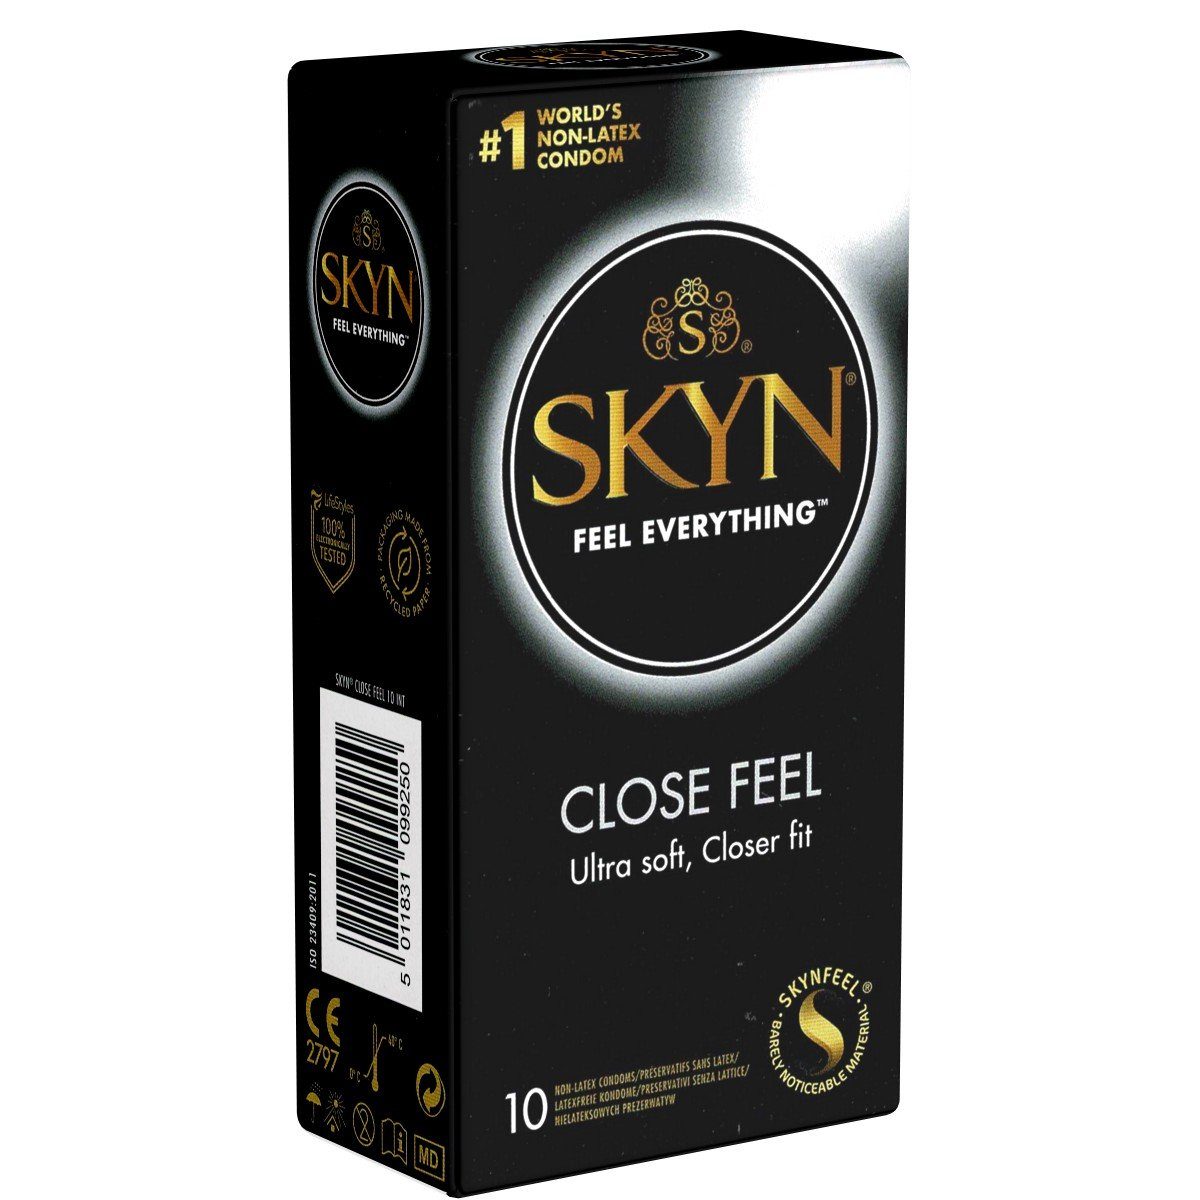 SKYN Kondome Close Feel (Ultra Soft, Closer Fit) Größe XS (schön eng), Packung mit, 10 St., hypoallergene Kondome, ideal für Latexallergiker, enge latexfreie Kondome aus Sensoprène™